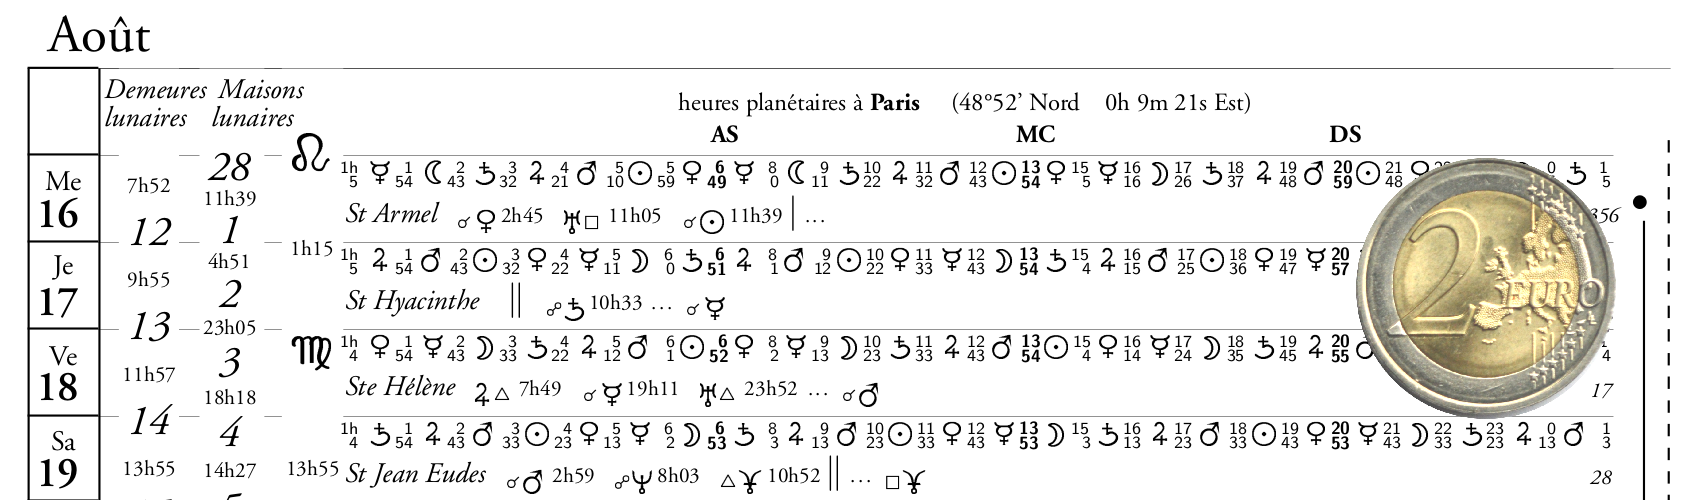 detail du calendrier planétaire avec aspects de la Lune, format carré